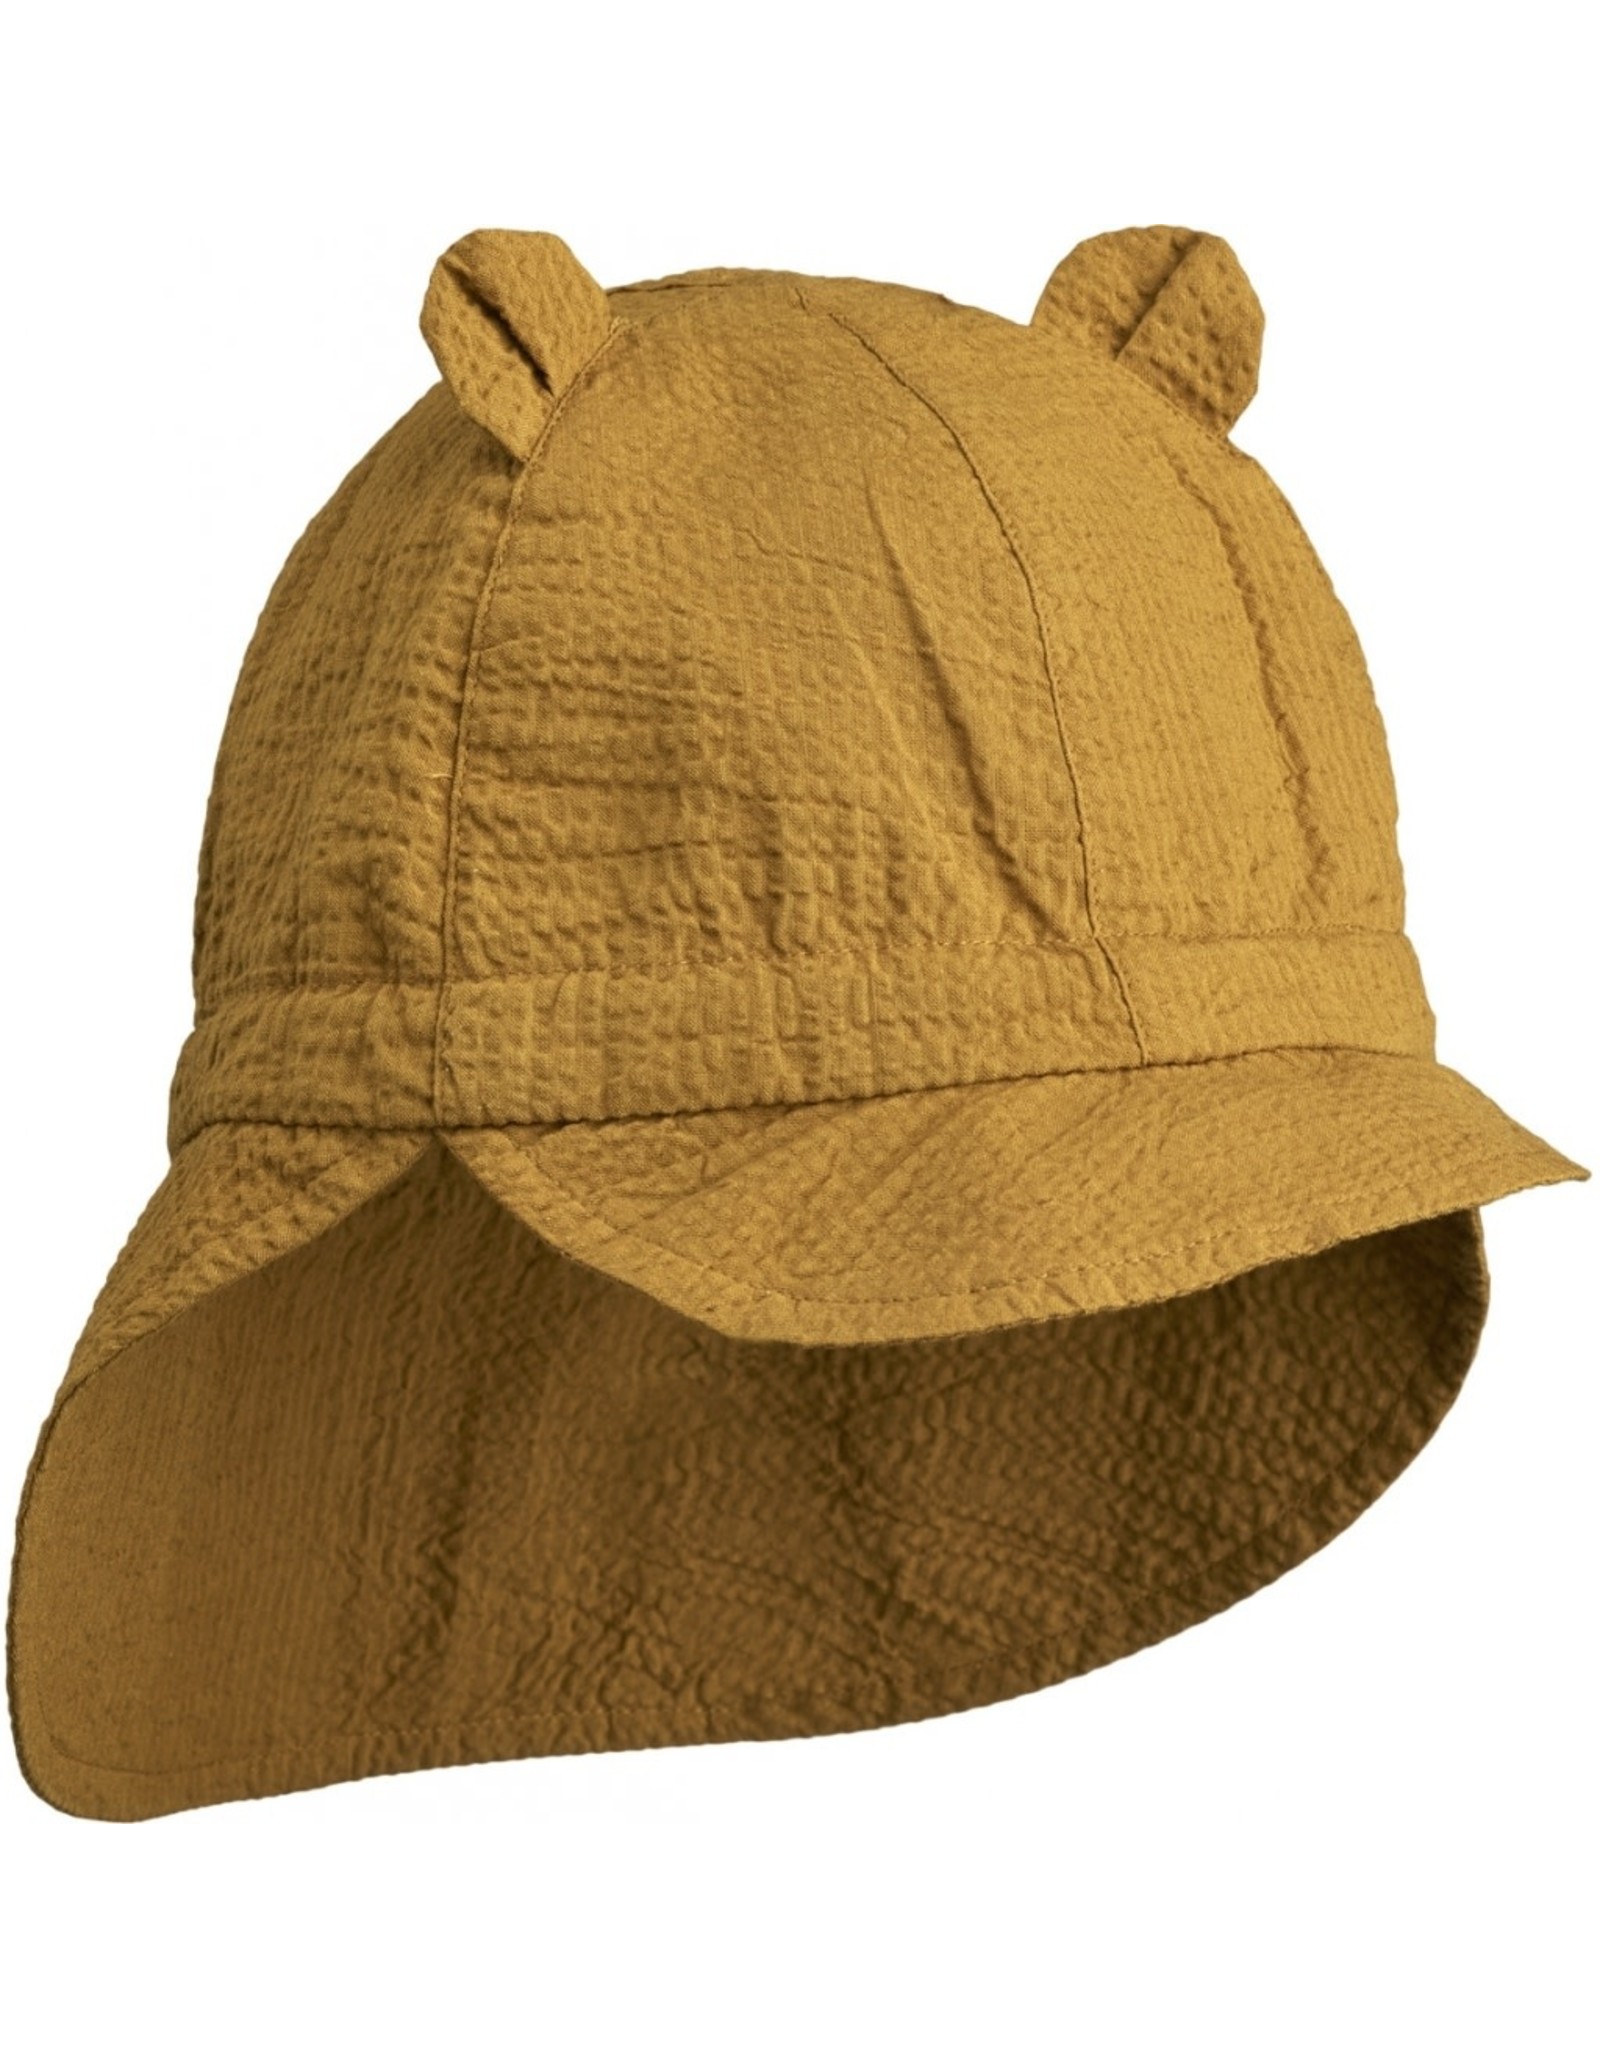 Liewood - Gorm Seersucker Sun Hat - Golden Caramel